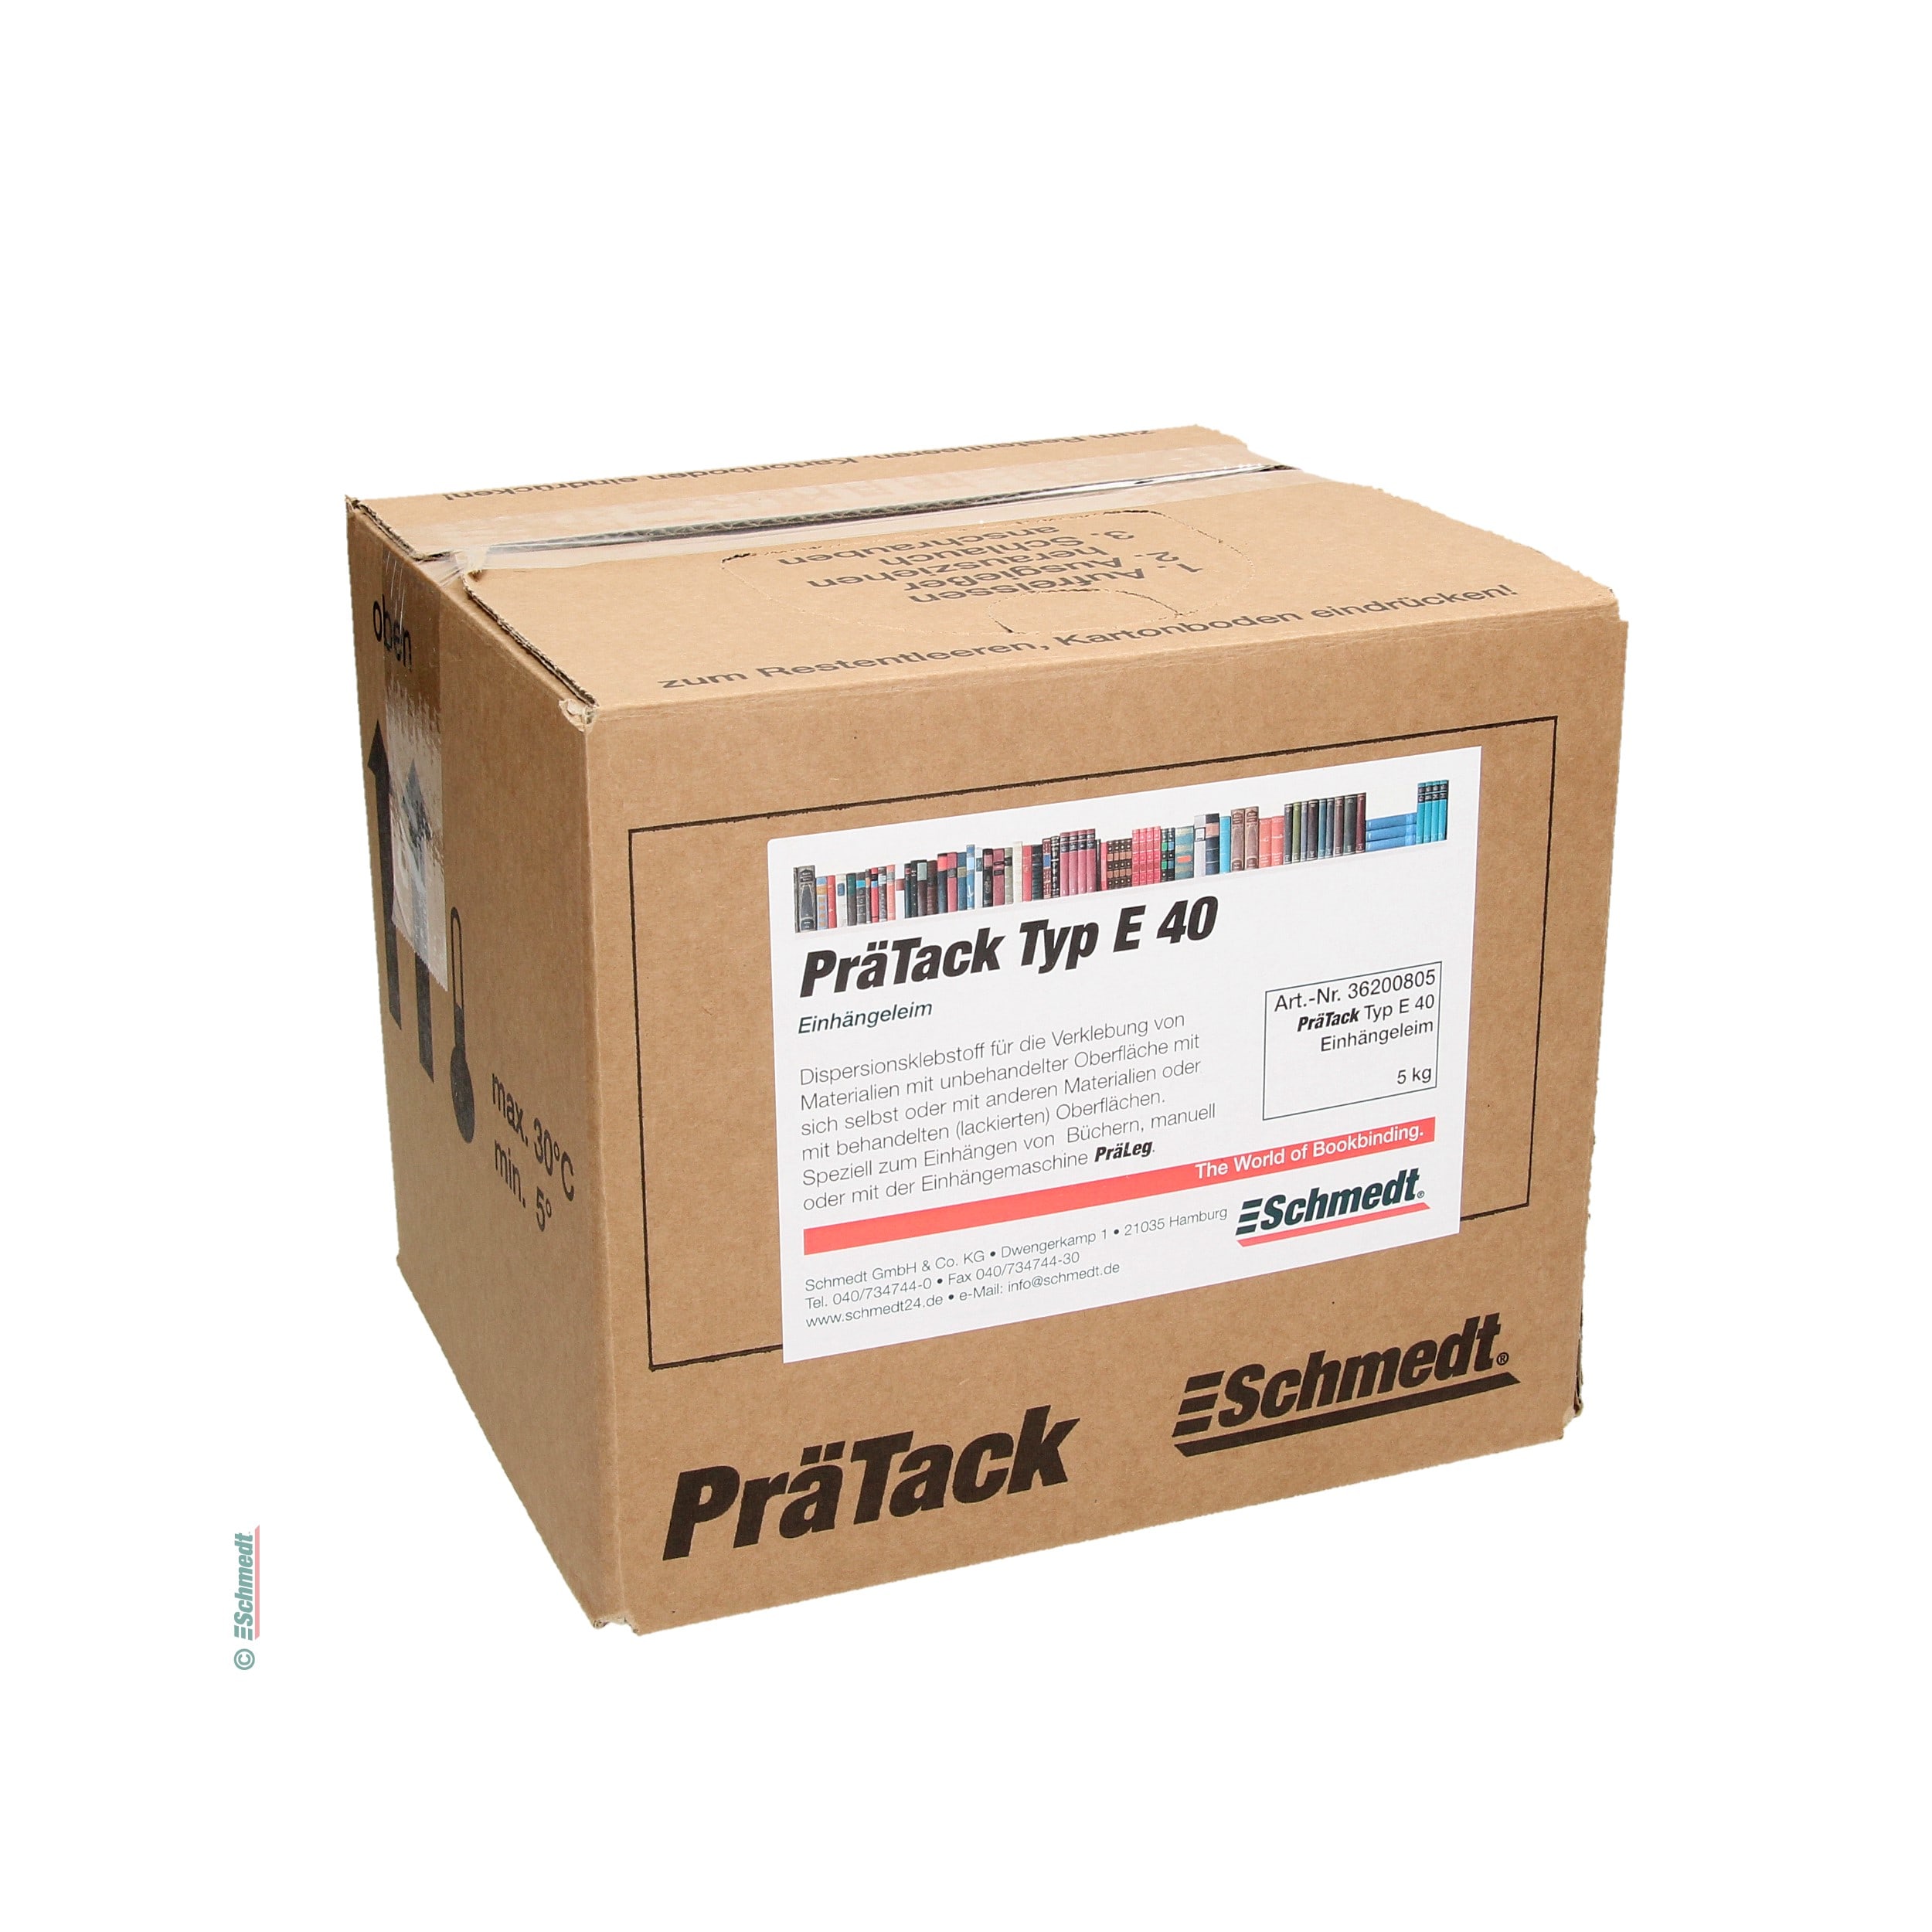 PräTack E40 - Contenido Bag-in-Box / 5 kg - para el encolado de materiales de superficie sin tratar con ellos mismos o con otros materiales ...